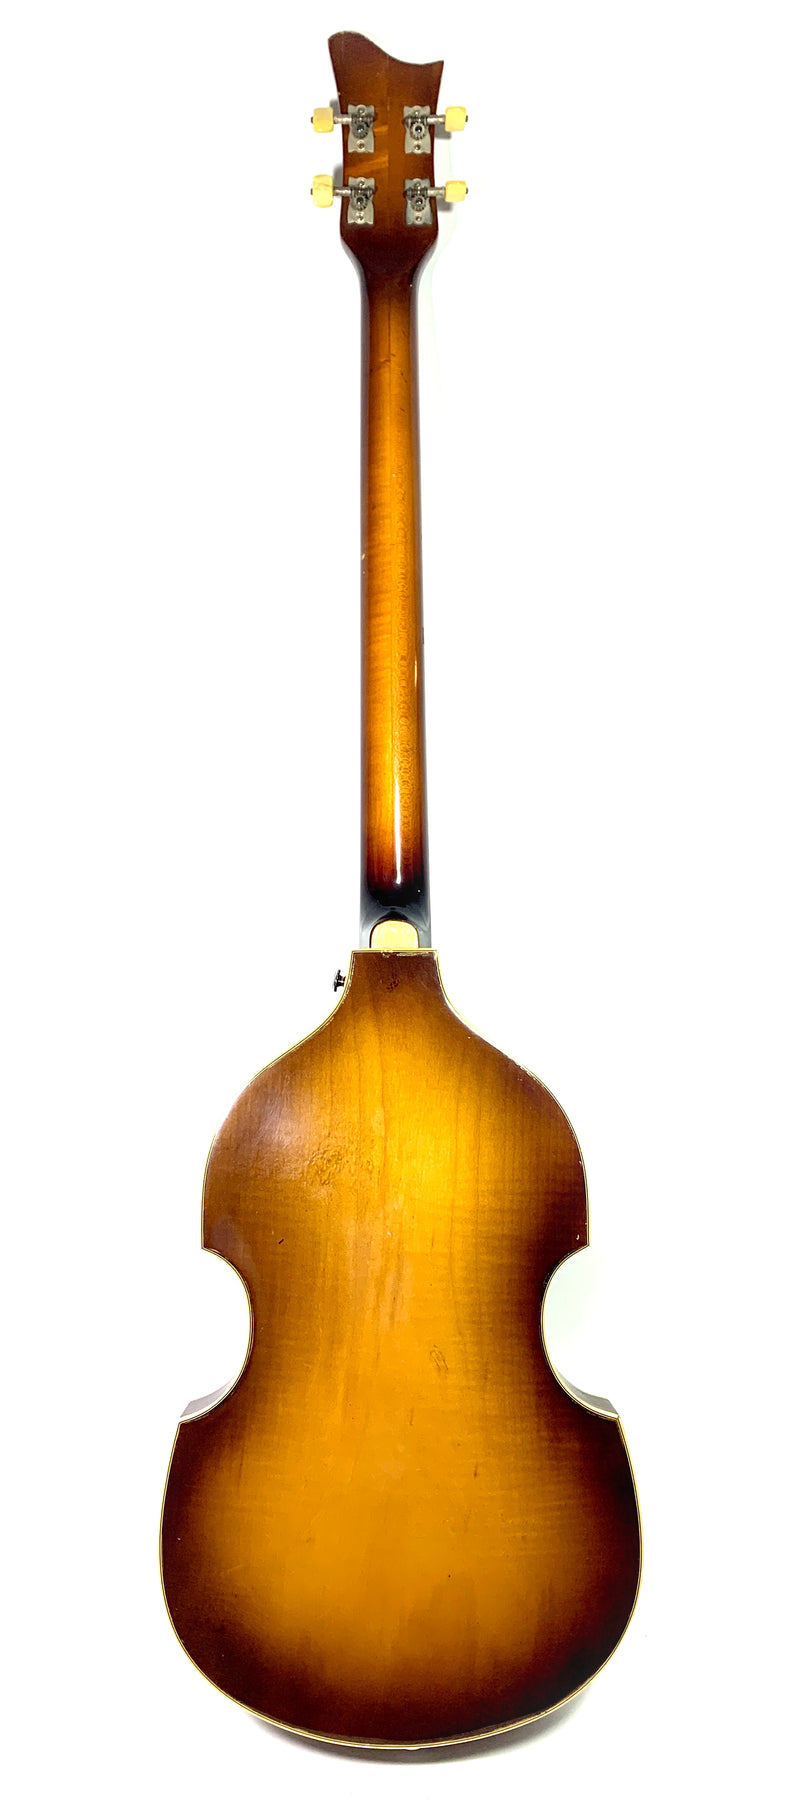 Höfner Violin Bass 500/1 from 1965